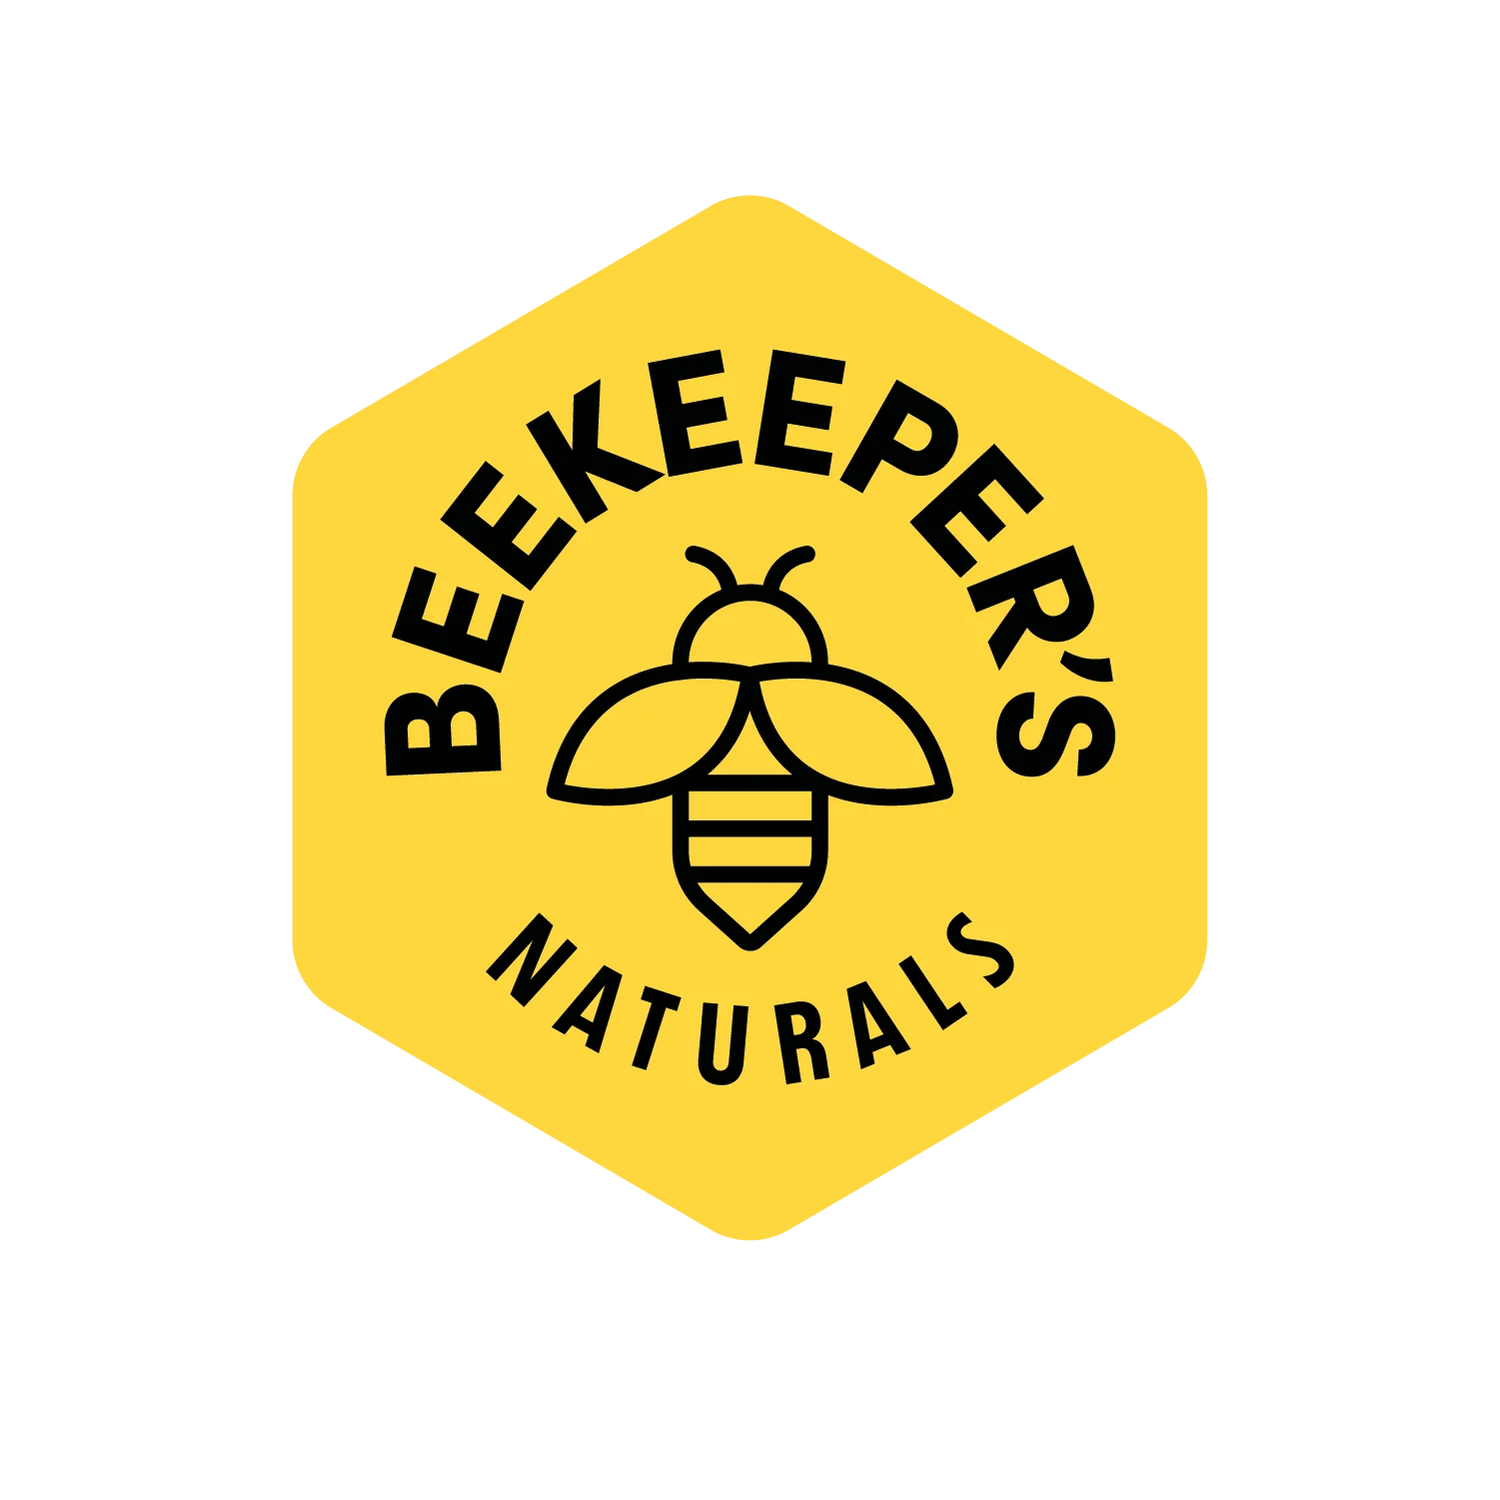 BeeKeeper's Naturals